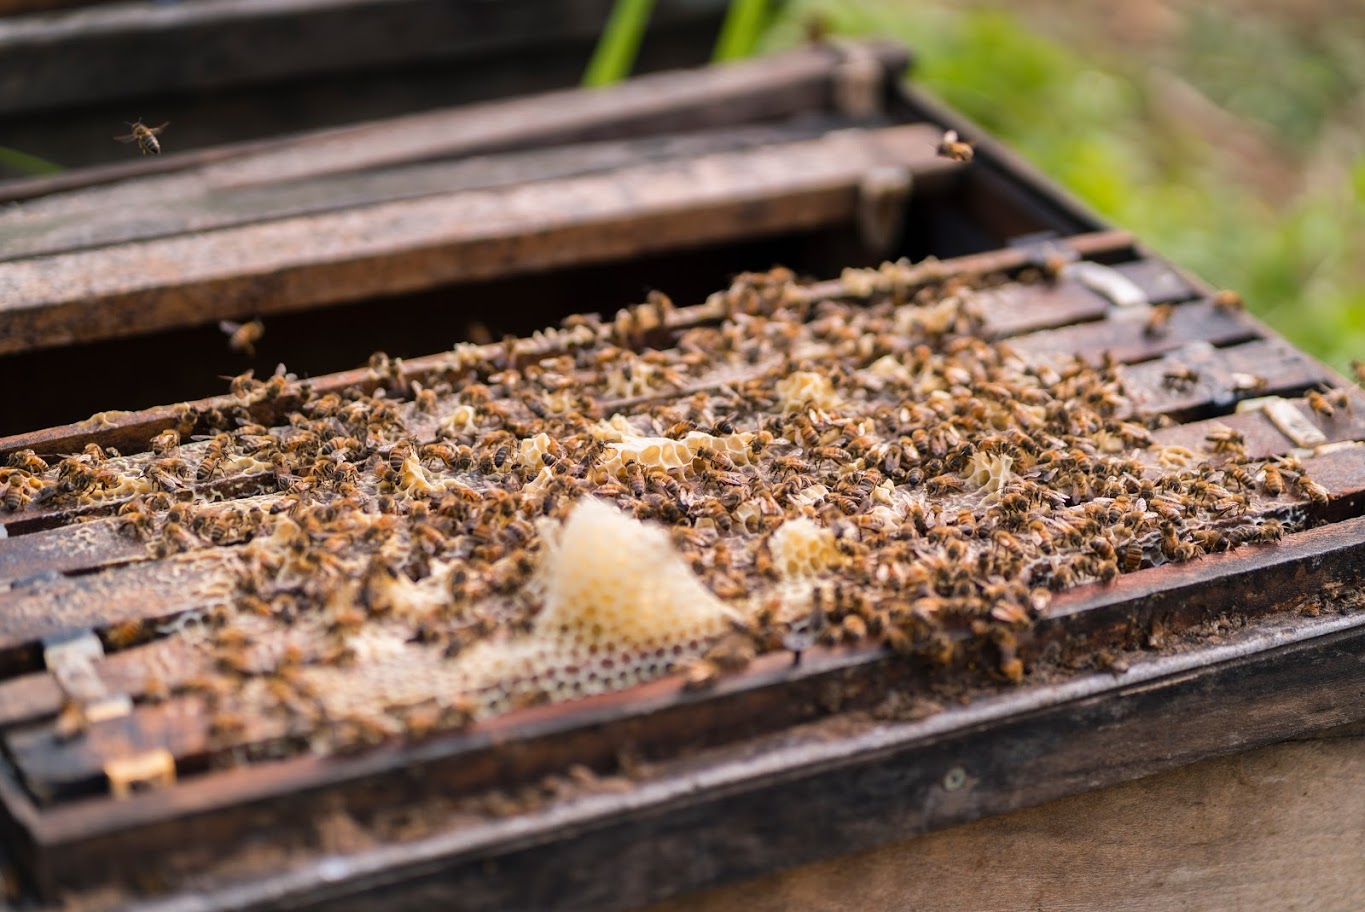 Mật ong rừng sữa chúa – Rừng Nhiệt Đới chai 360g có vị ngọt đậm thơm hương sữa ong chúa